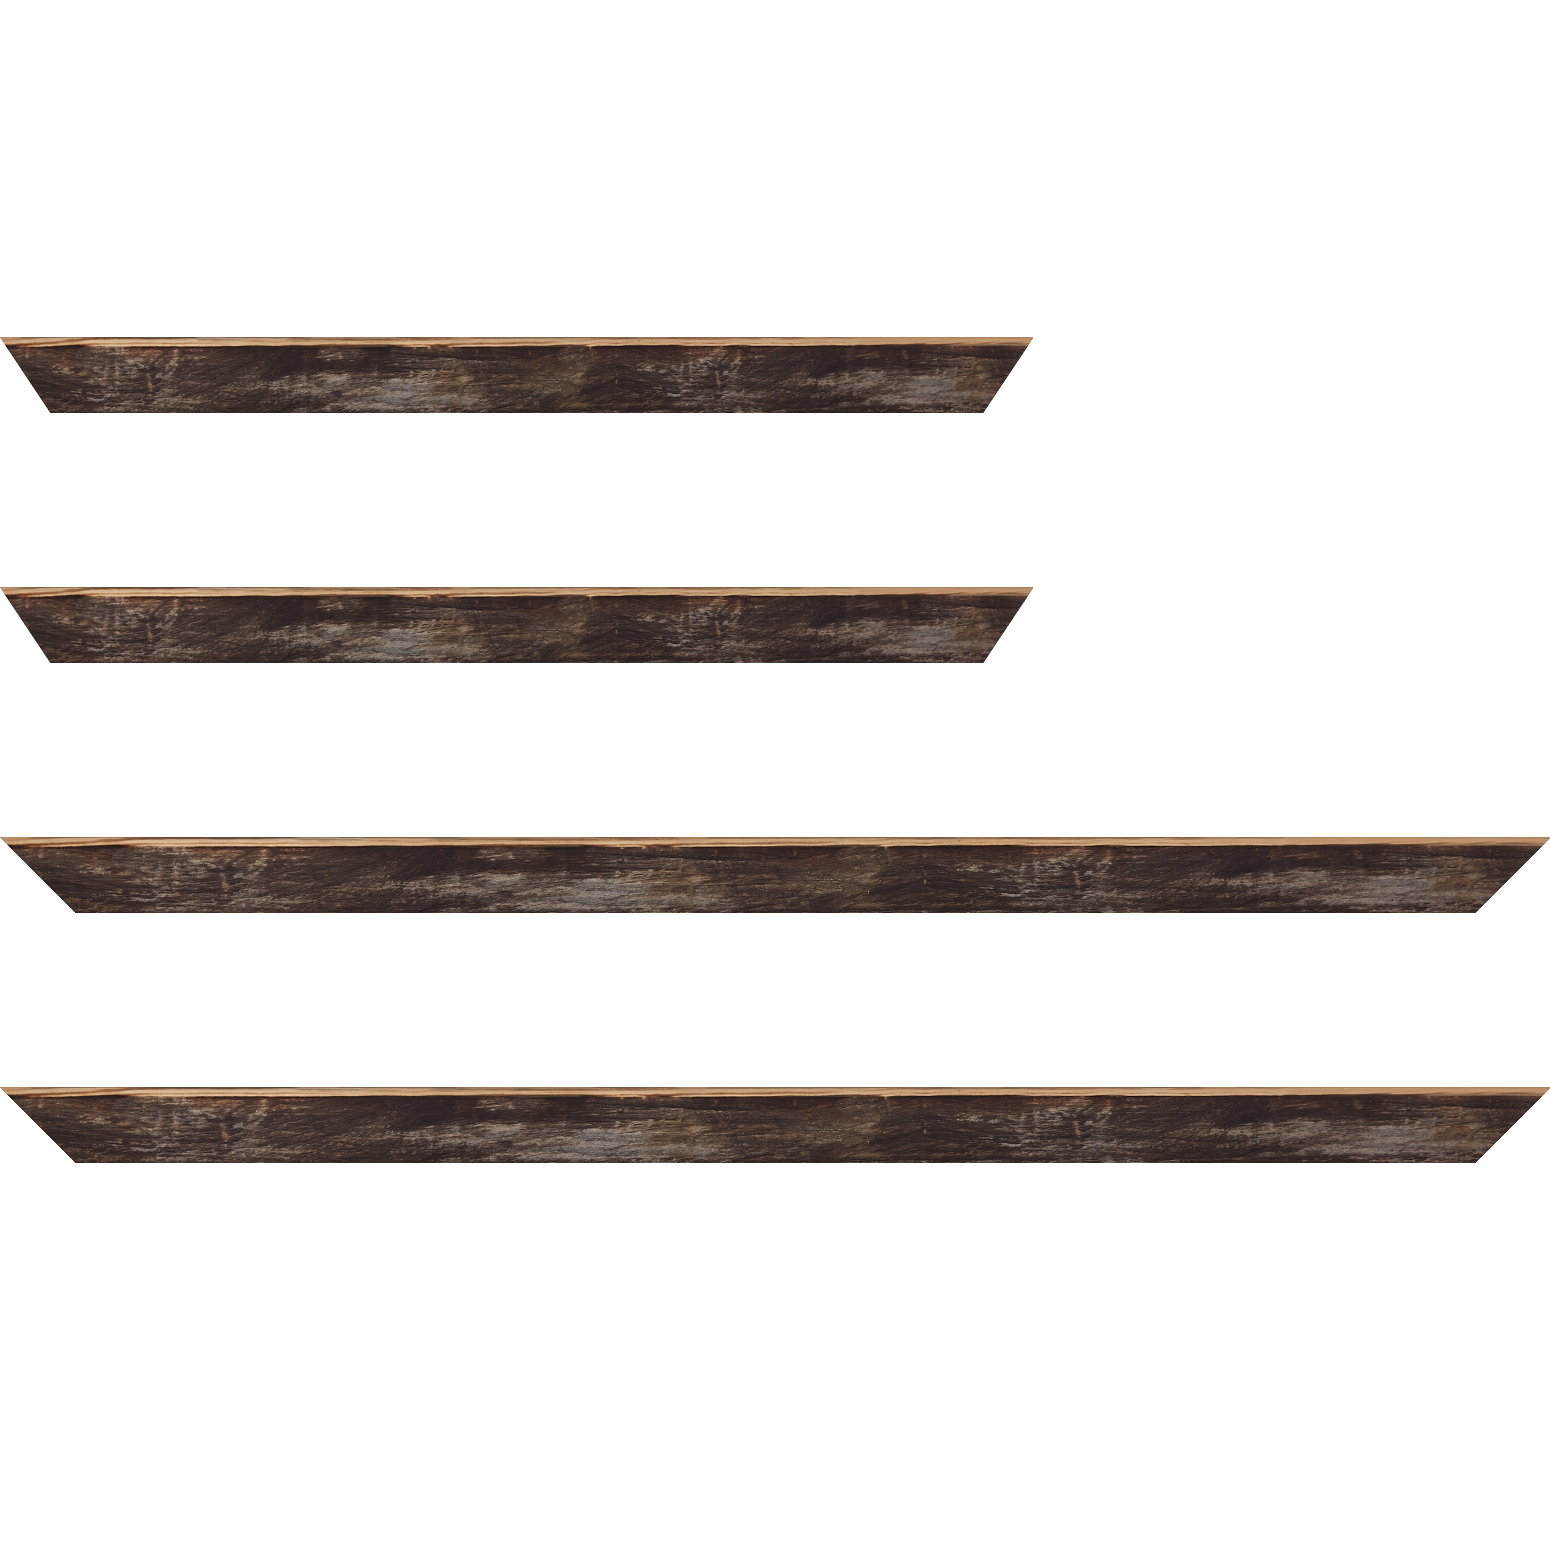 Baguette bois profil arrondi en pente plongeant largeur 2.4cm couleur noir ébène effet ressuyé, angle du cadre extérieur filet naturel - 30x90